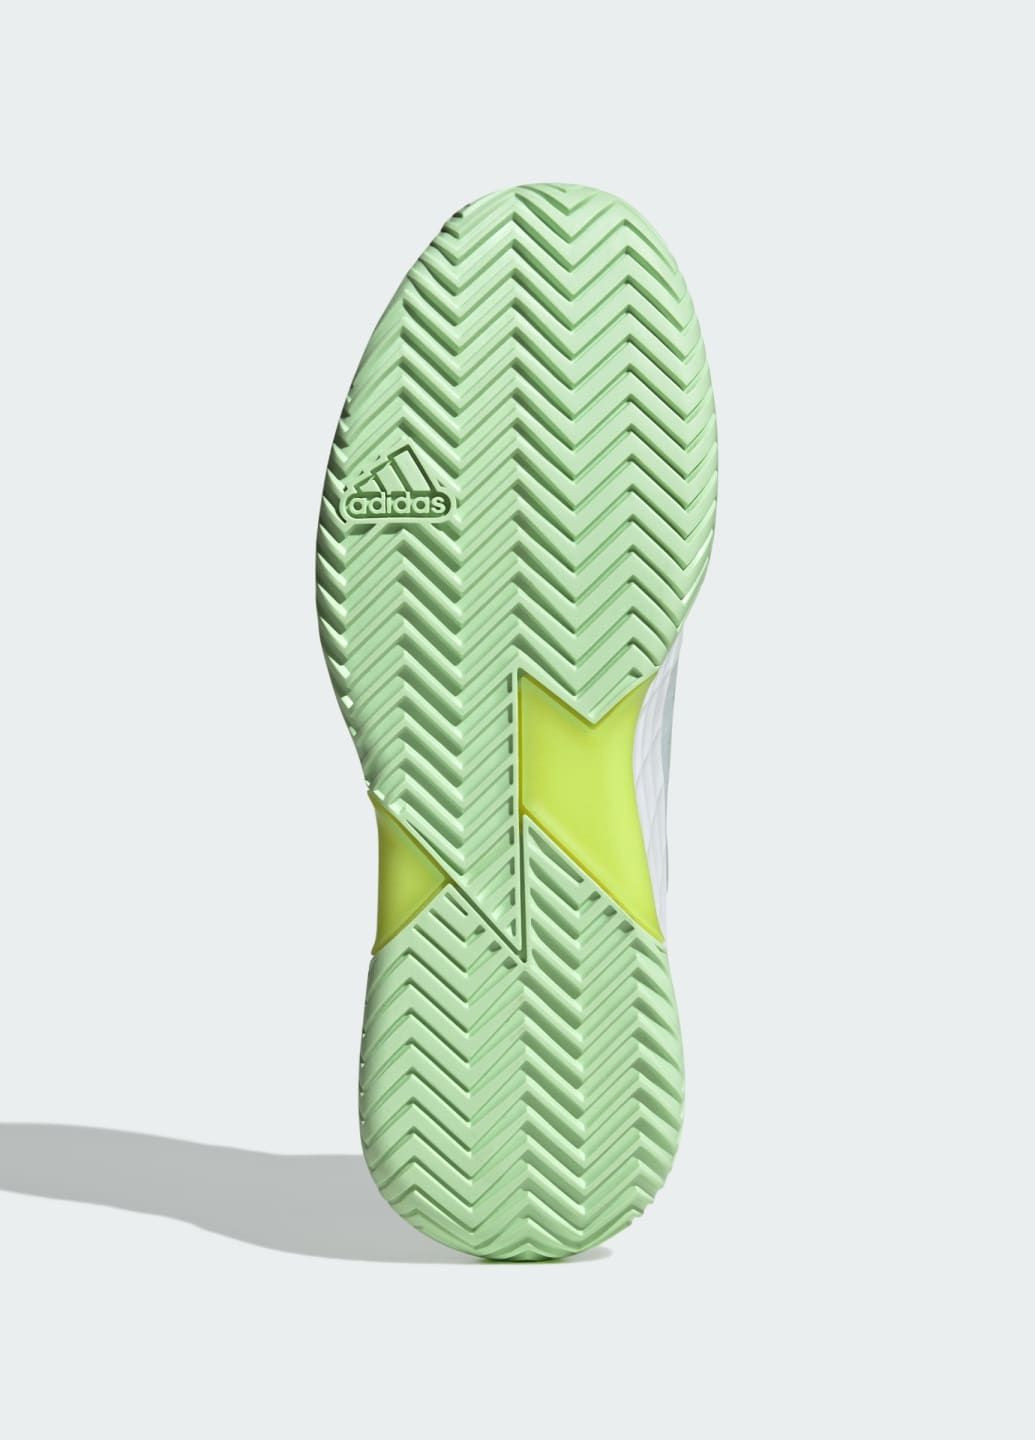 Білі всесезон кросівки для тенісу adizero ubersonic 4.1 adidas